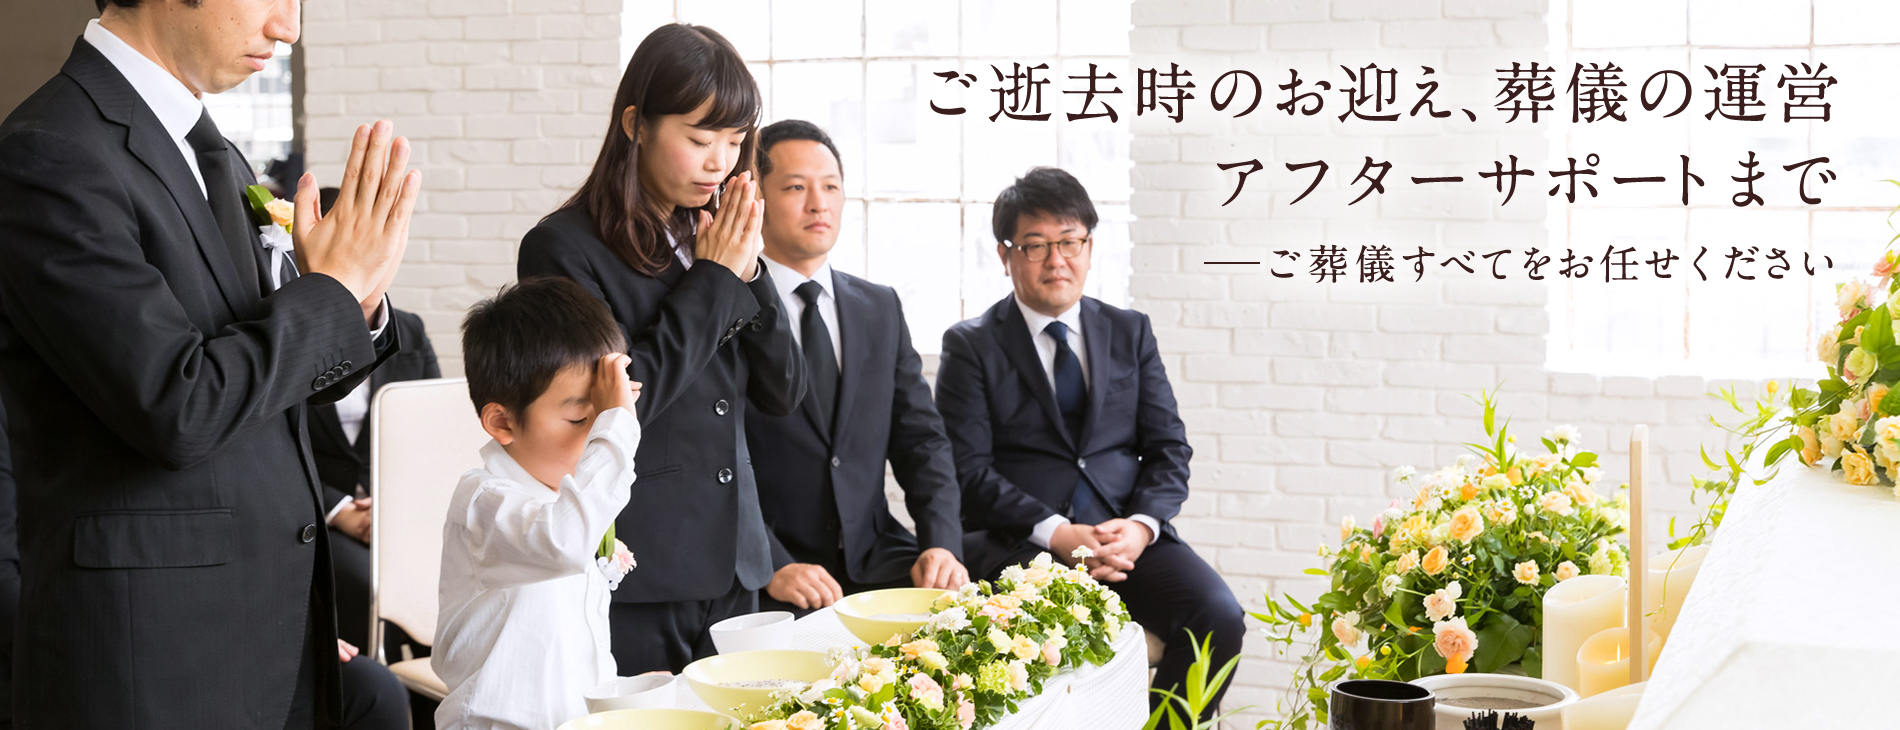 日比谷花壇のお葬式で、葬儀のすべてをお手伝い。